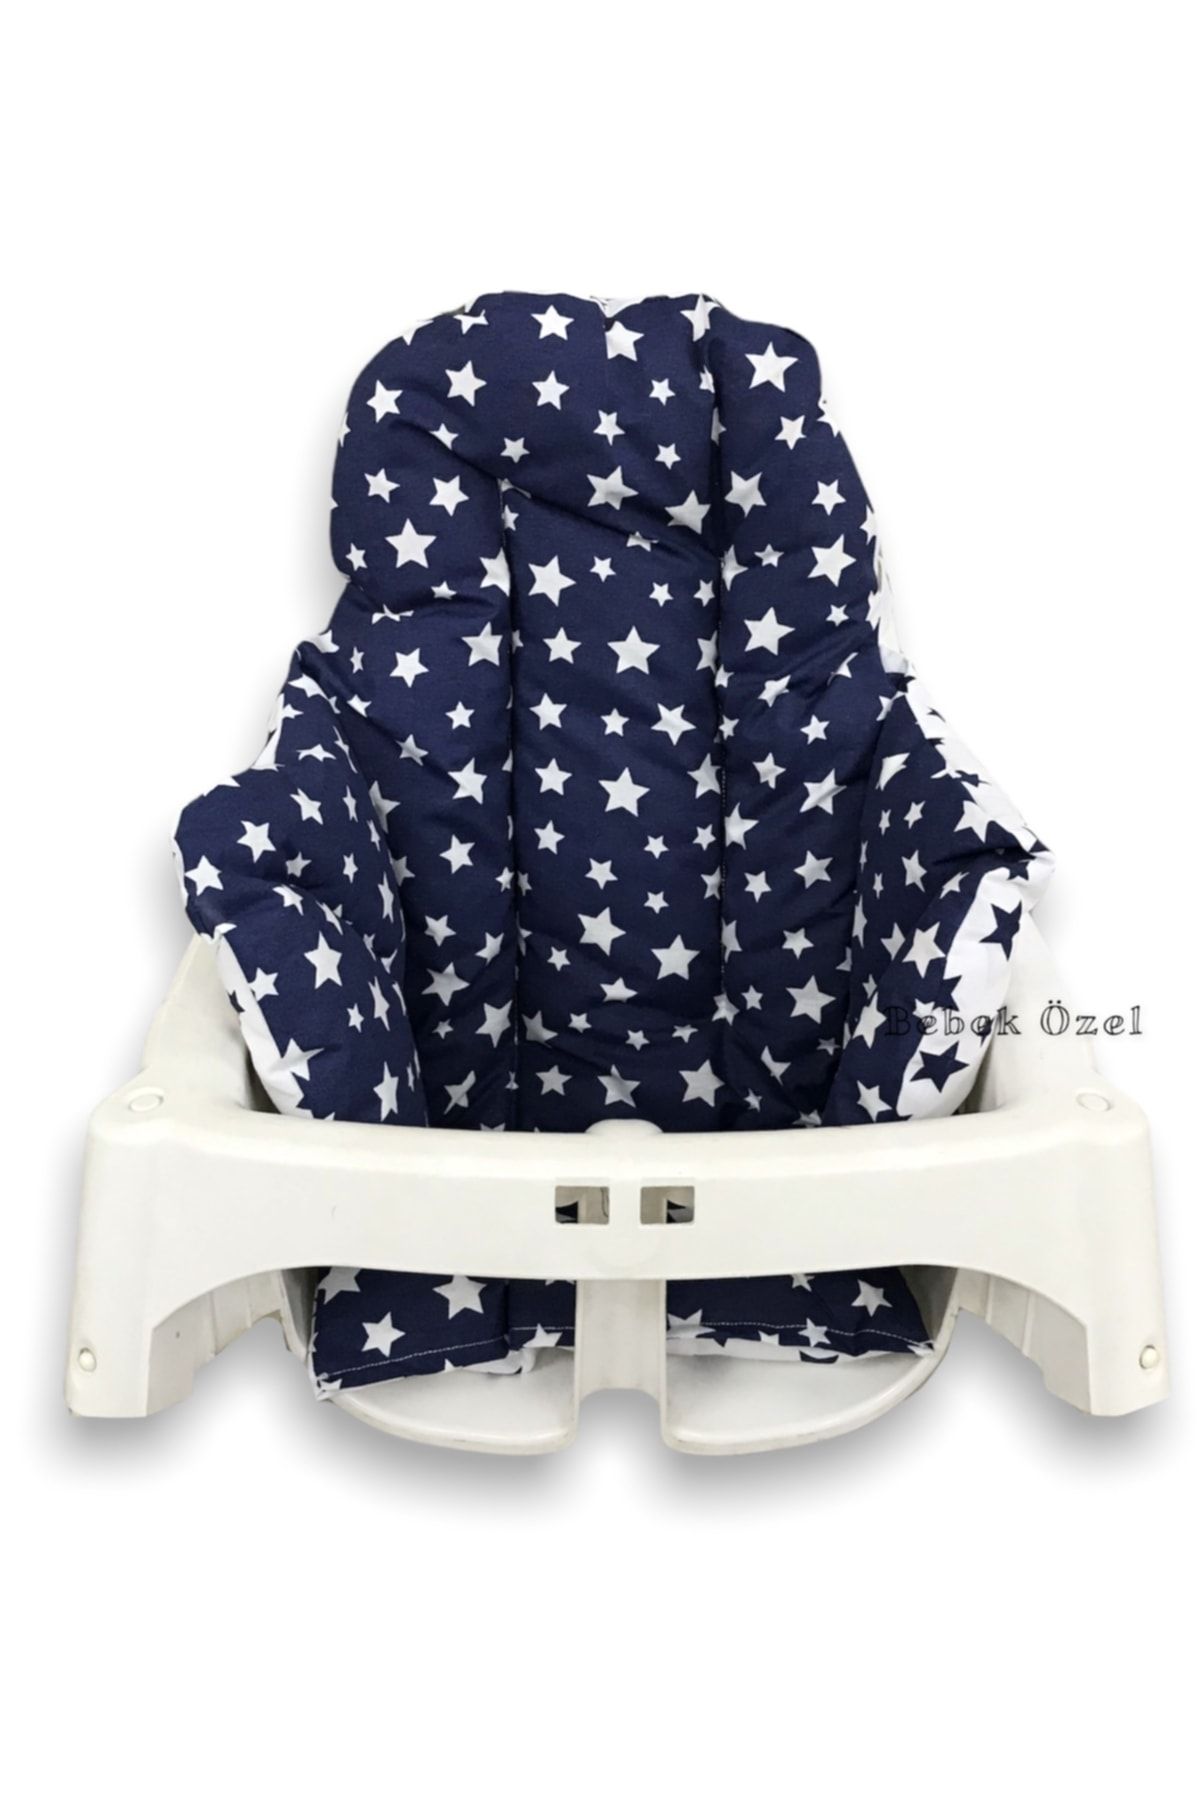 Bebek Özel Pamuklu Bebek Çocuk Mama Sandalyesi Minderi Lacivert Yıldızlı